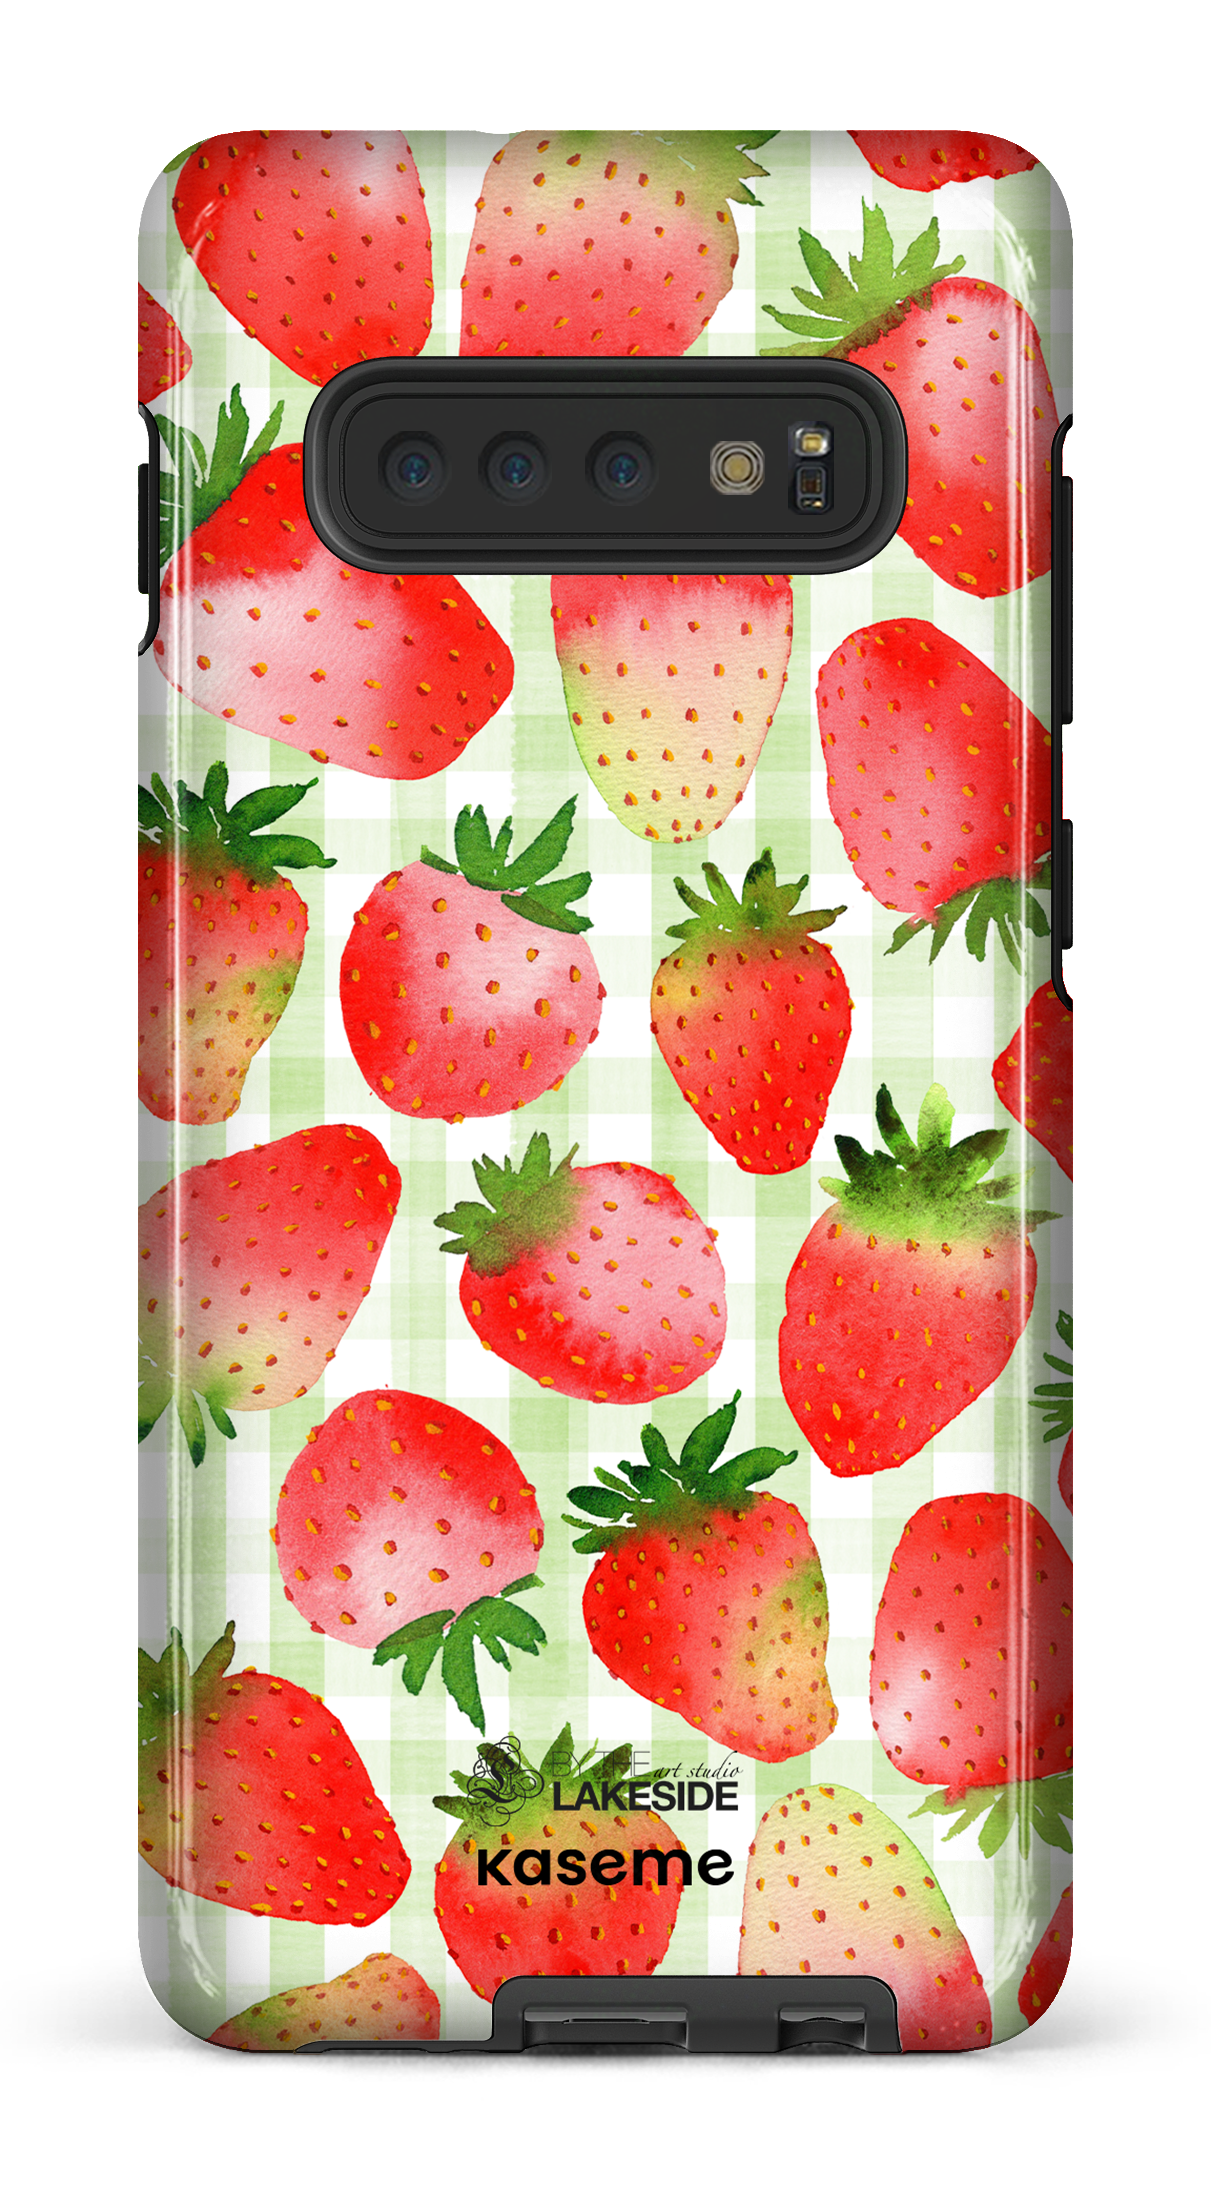 Strawberry Fields Green by Pooja Umrani - Galaxy S10 Plus